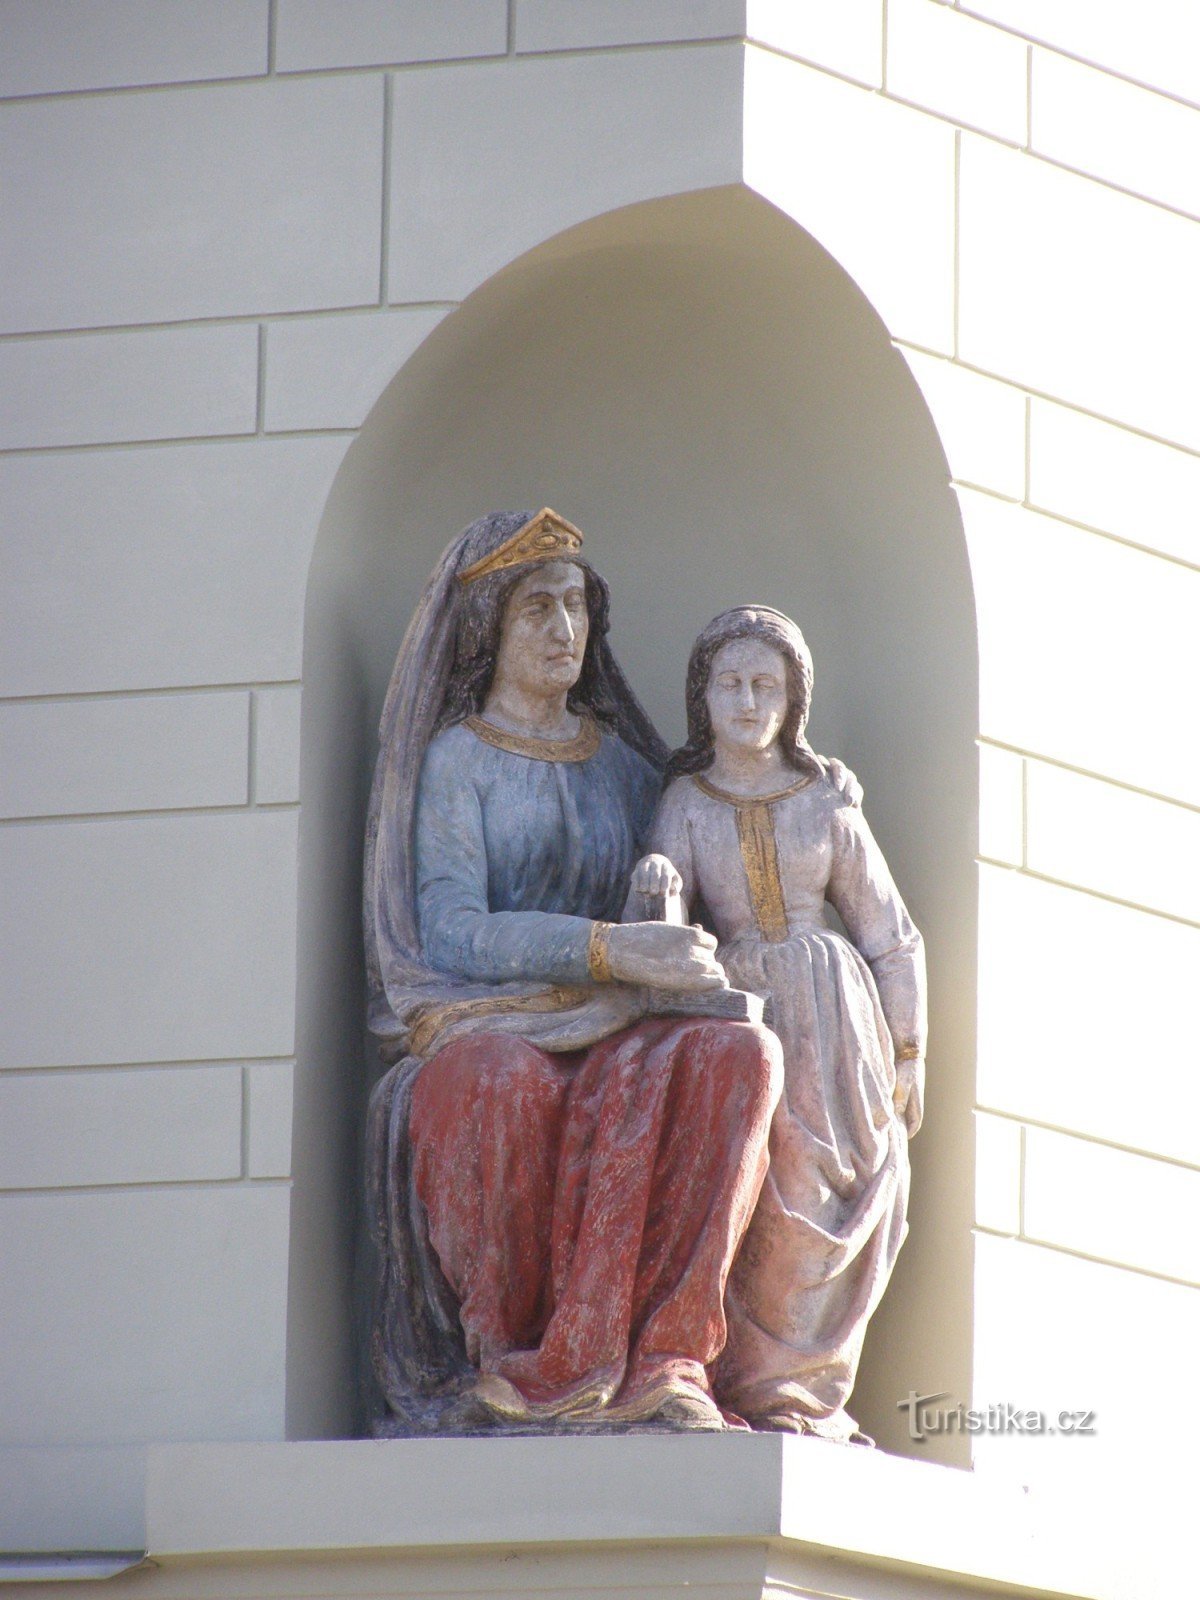 Týnec nad Labem - casa burgherului nr. 158 cu statuia Sf. Ana o învață pe Fecioara Maria